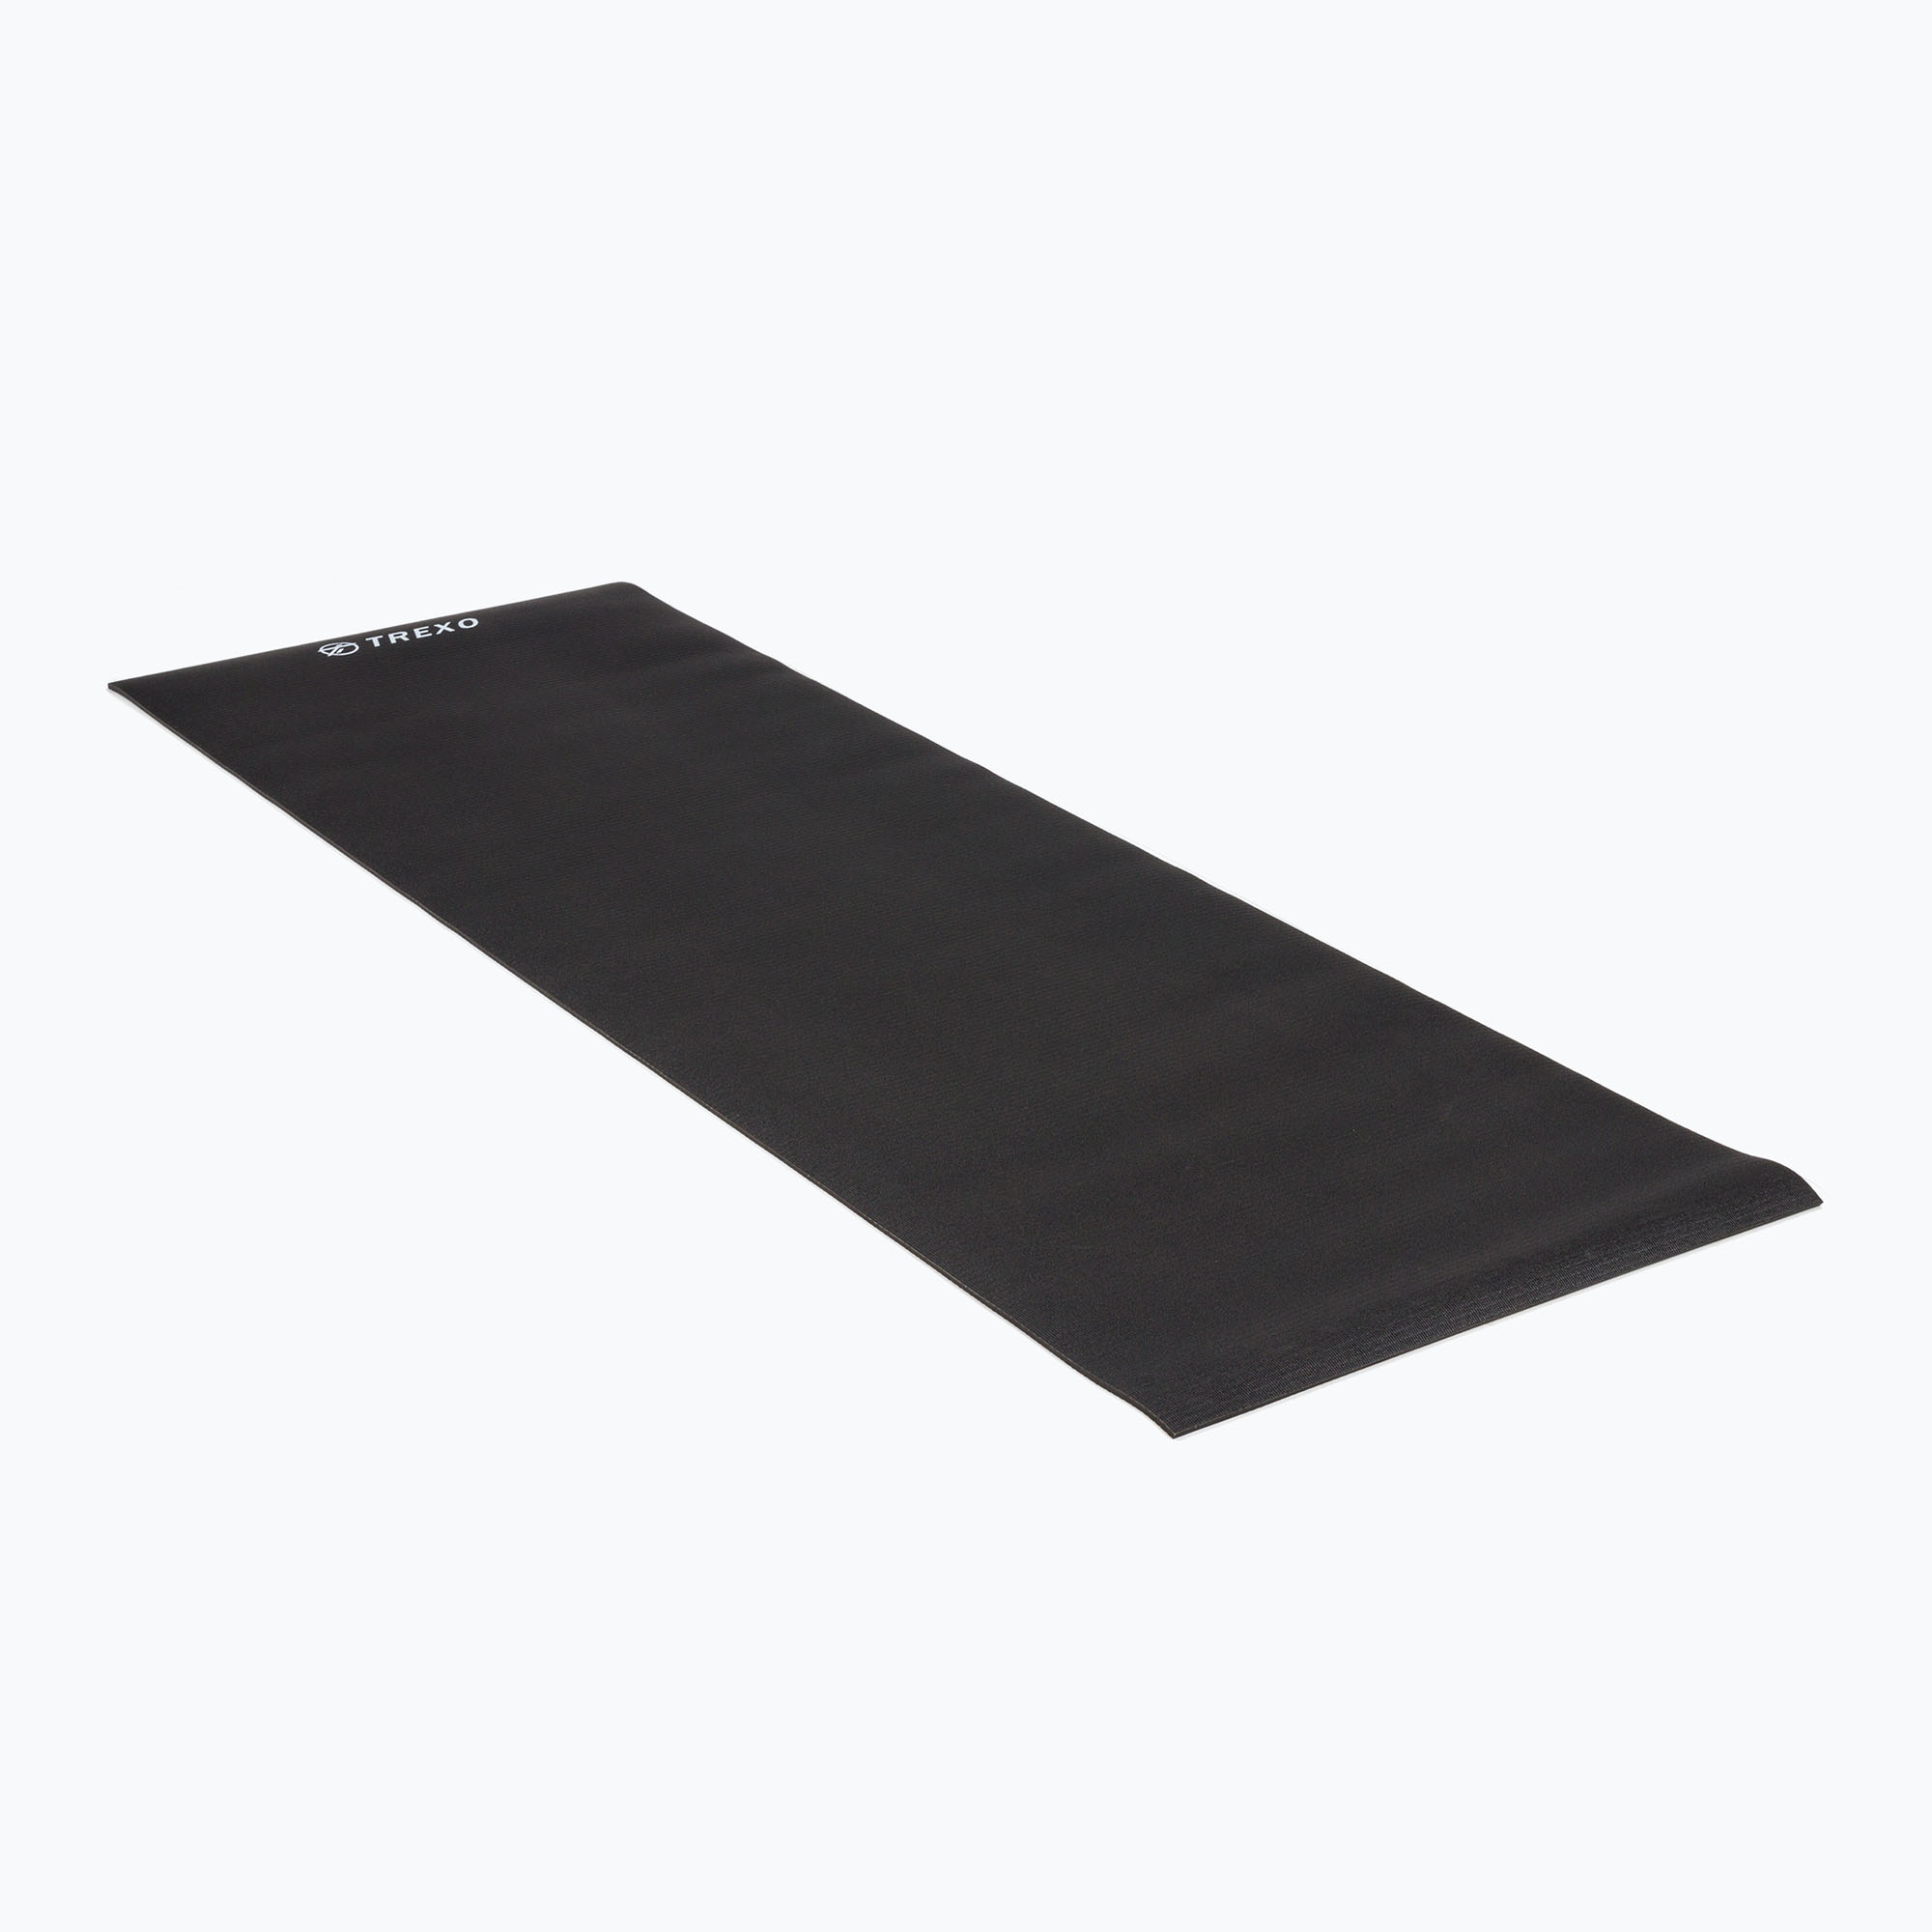 TREXO PVC 6 mm yoga mat negru YM-P01C